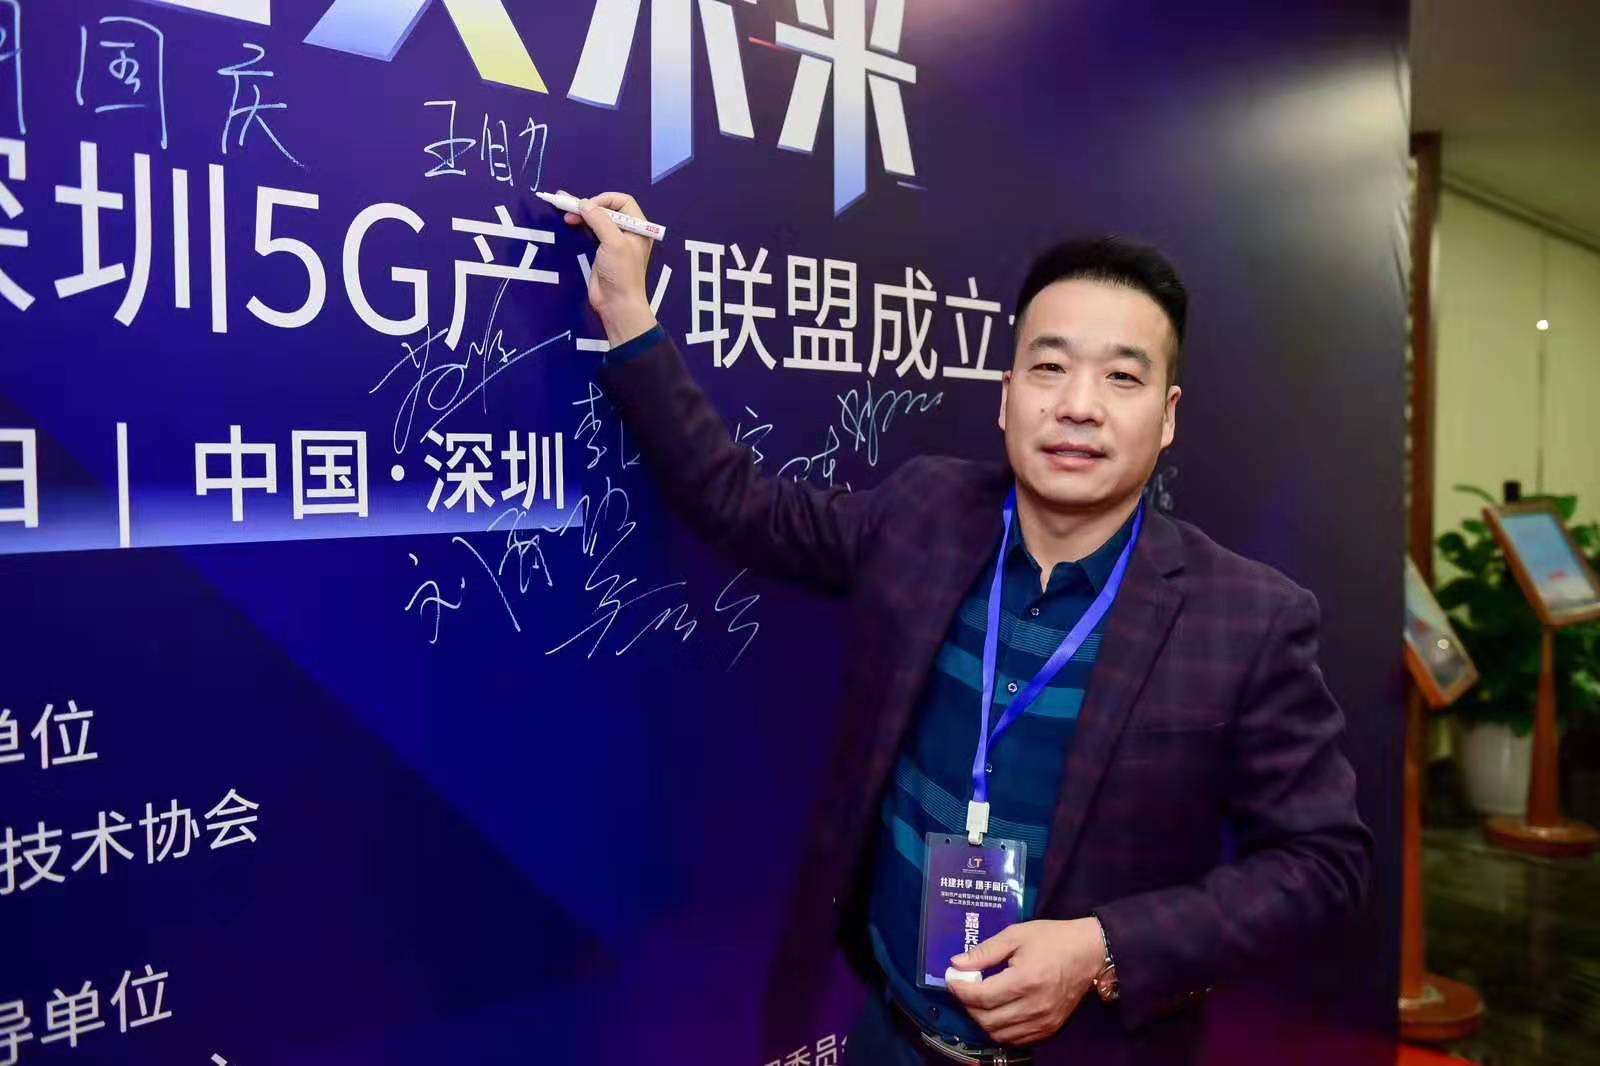 泰燃智能祝賀首屆5G高峰論壇暨深圳5G產業聯盟成立大會勝利召開